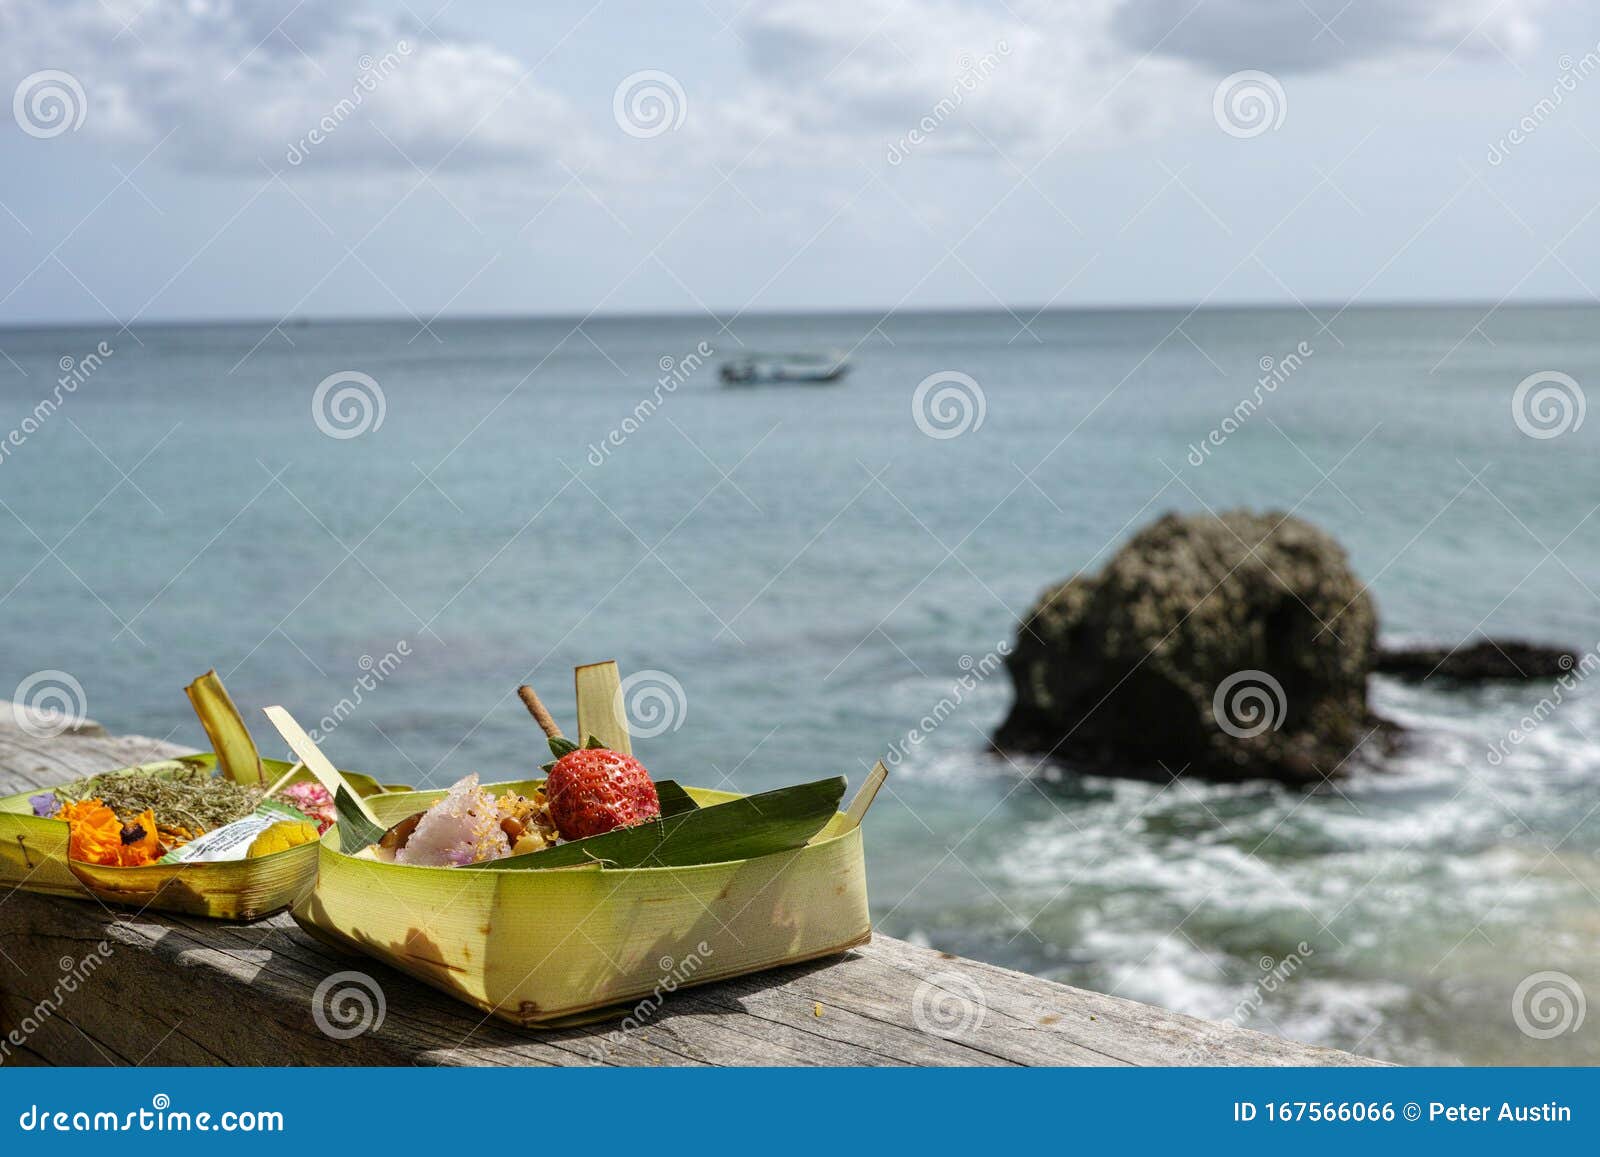 拉姆坦巴厘热带水果 库存照片. 图片 包括有 产物, 市场, 热带, 器官, 膳食, 巴厘岛, 叶子, 烹调 - 206540340